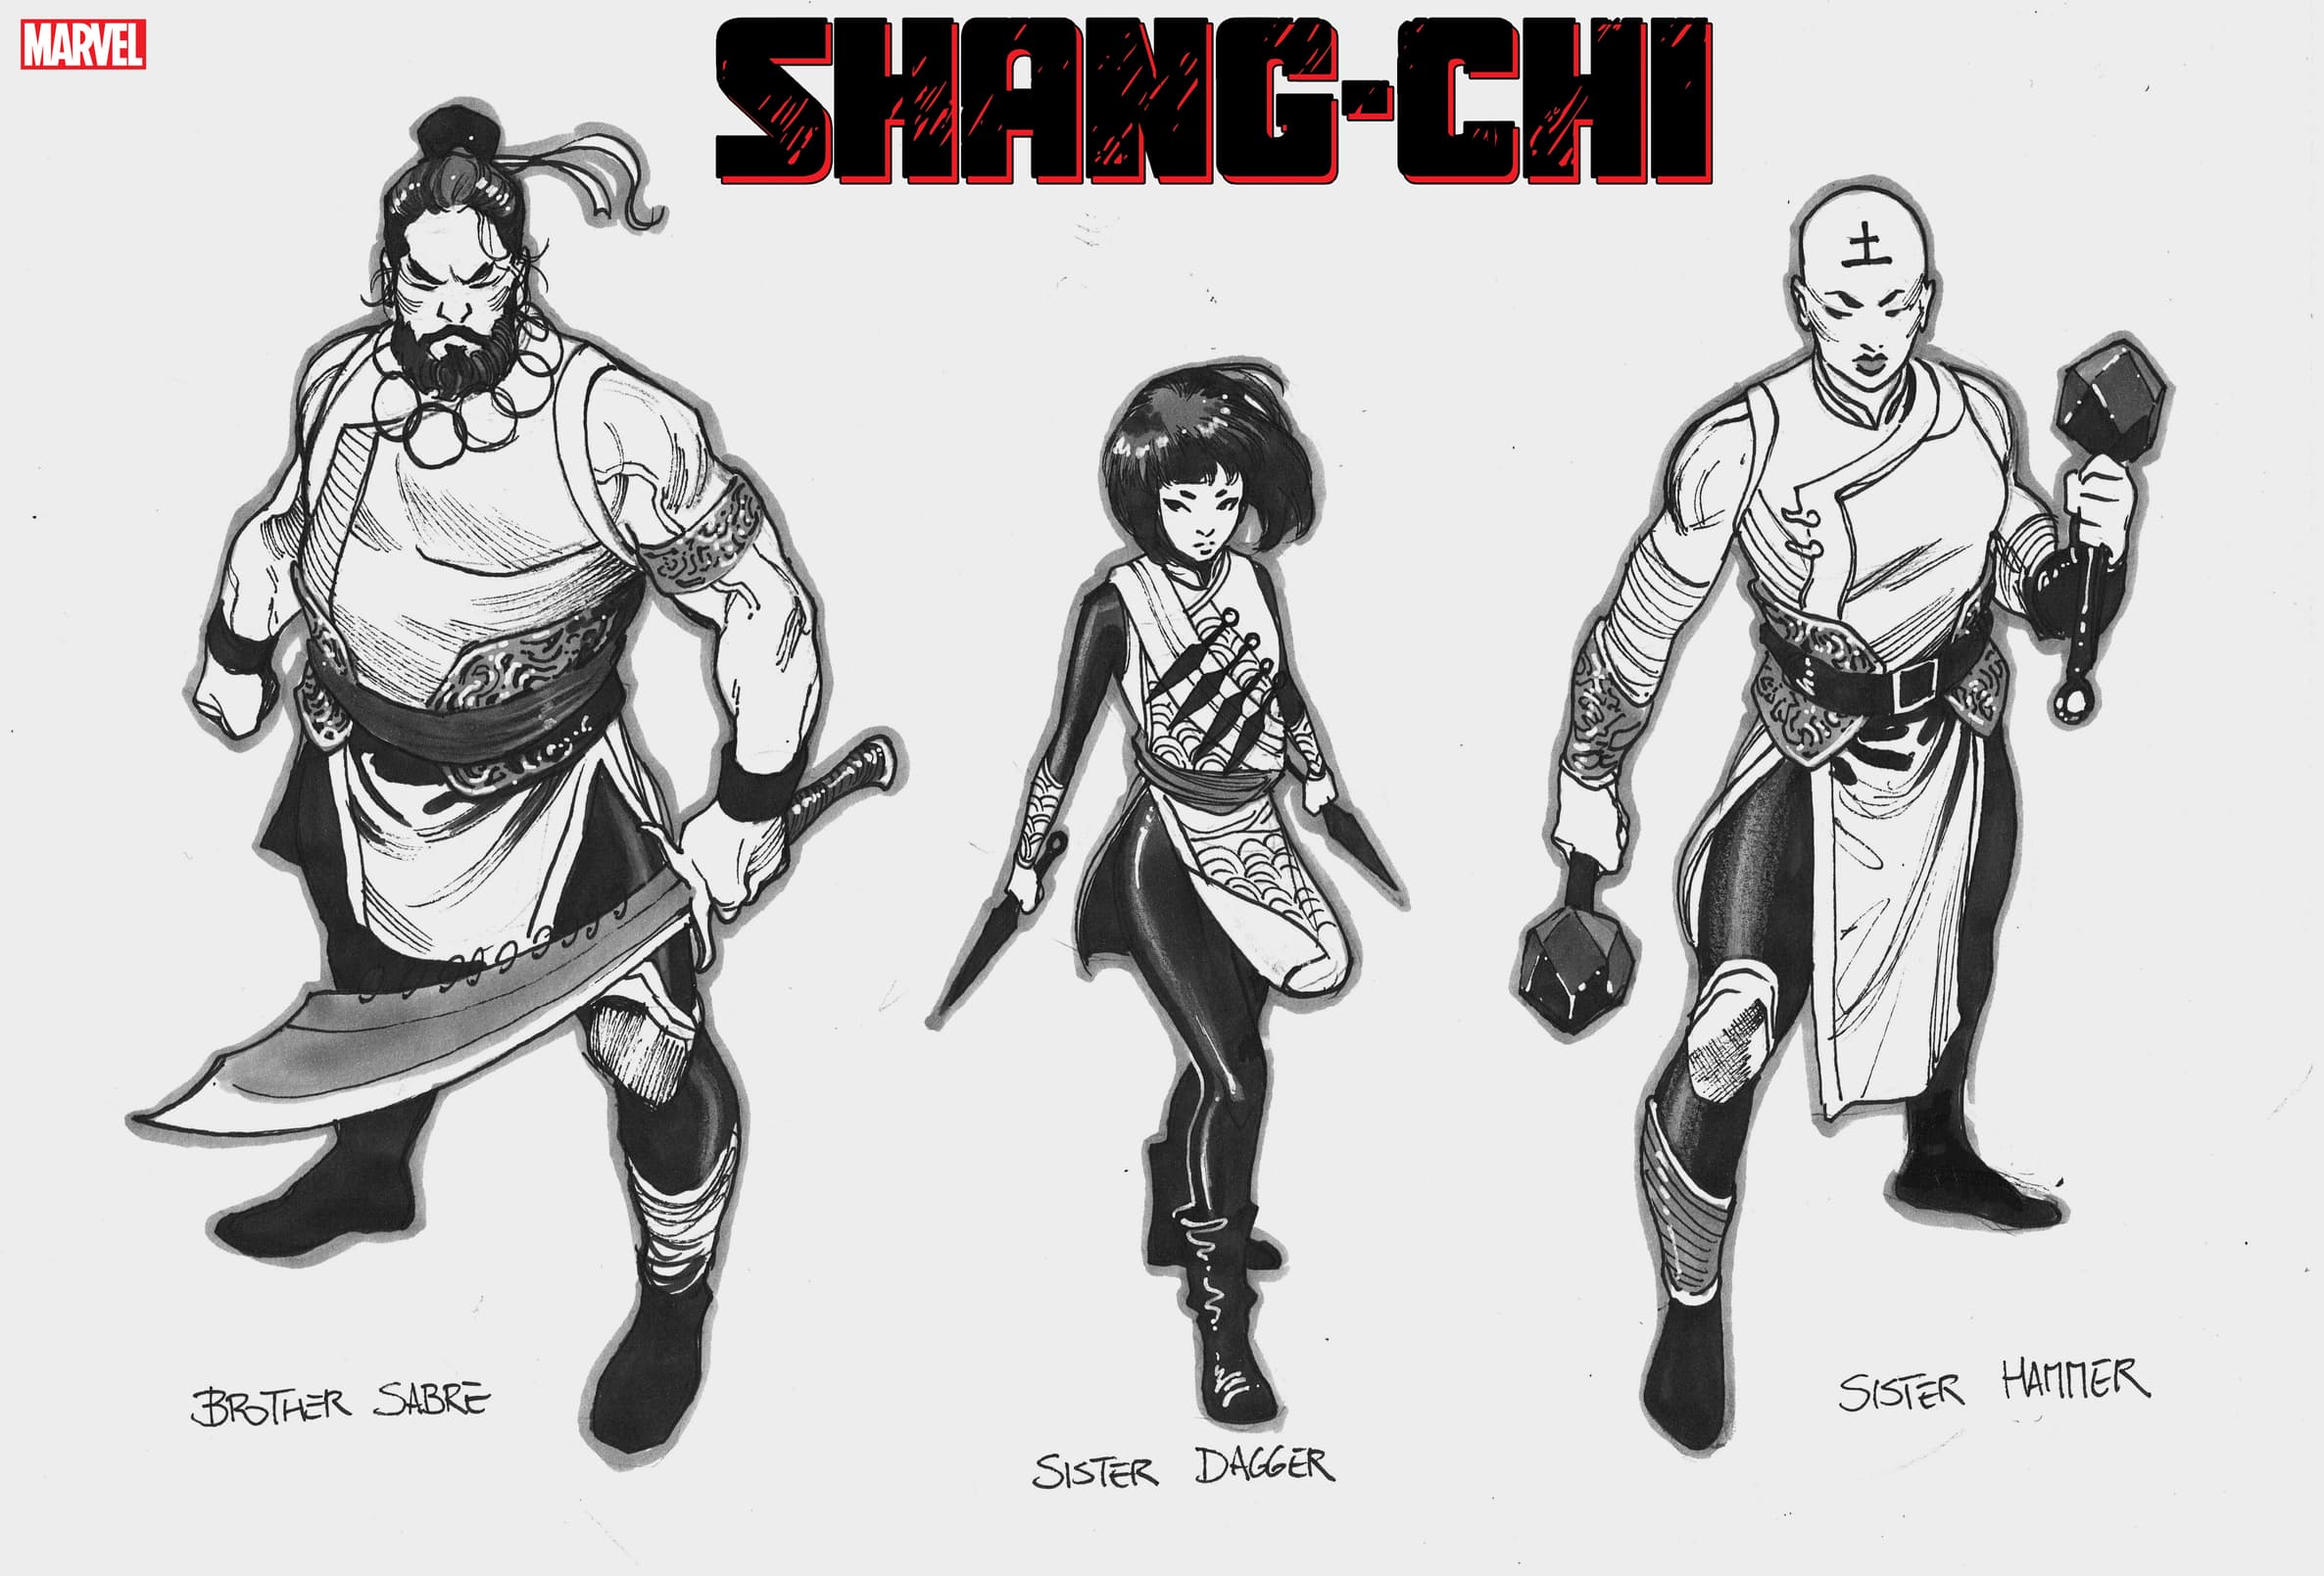 Shang-Chi character designs